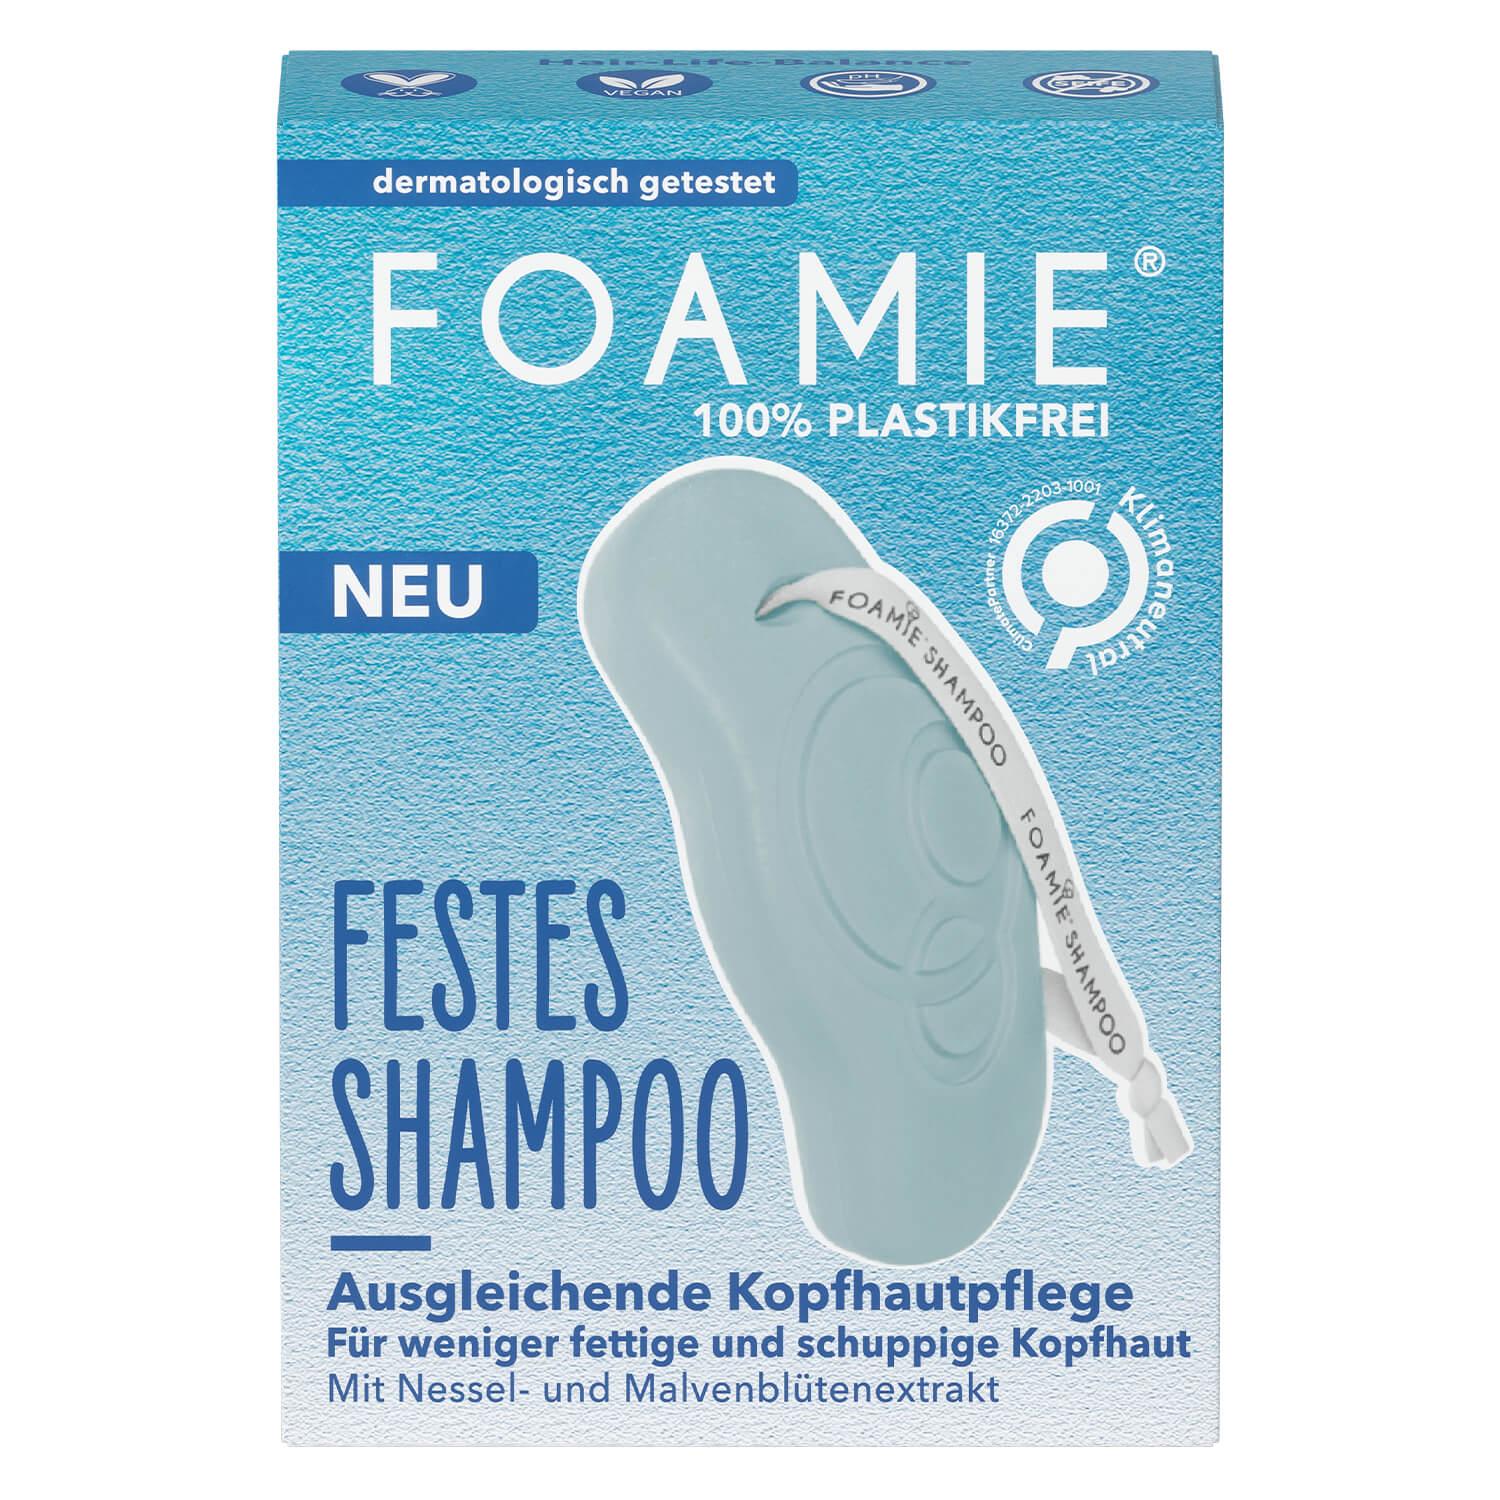 Foamie - Solid Shampoo Nettle & Mallow Flower Extract